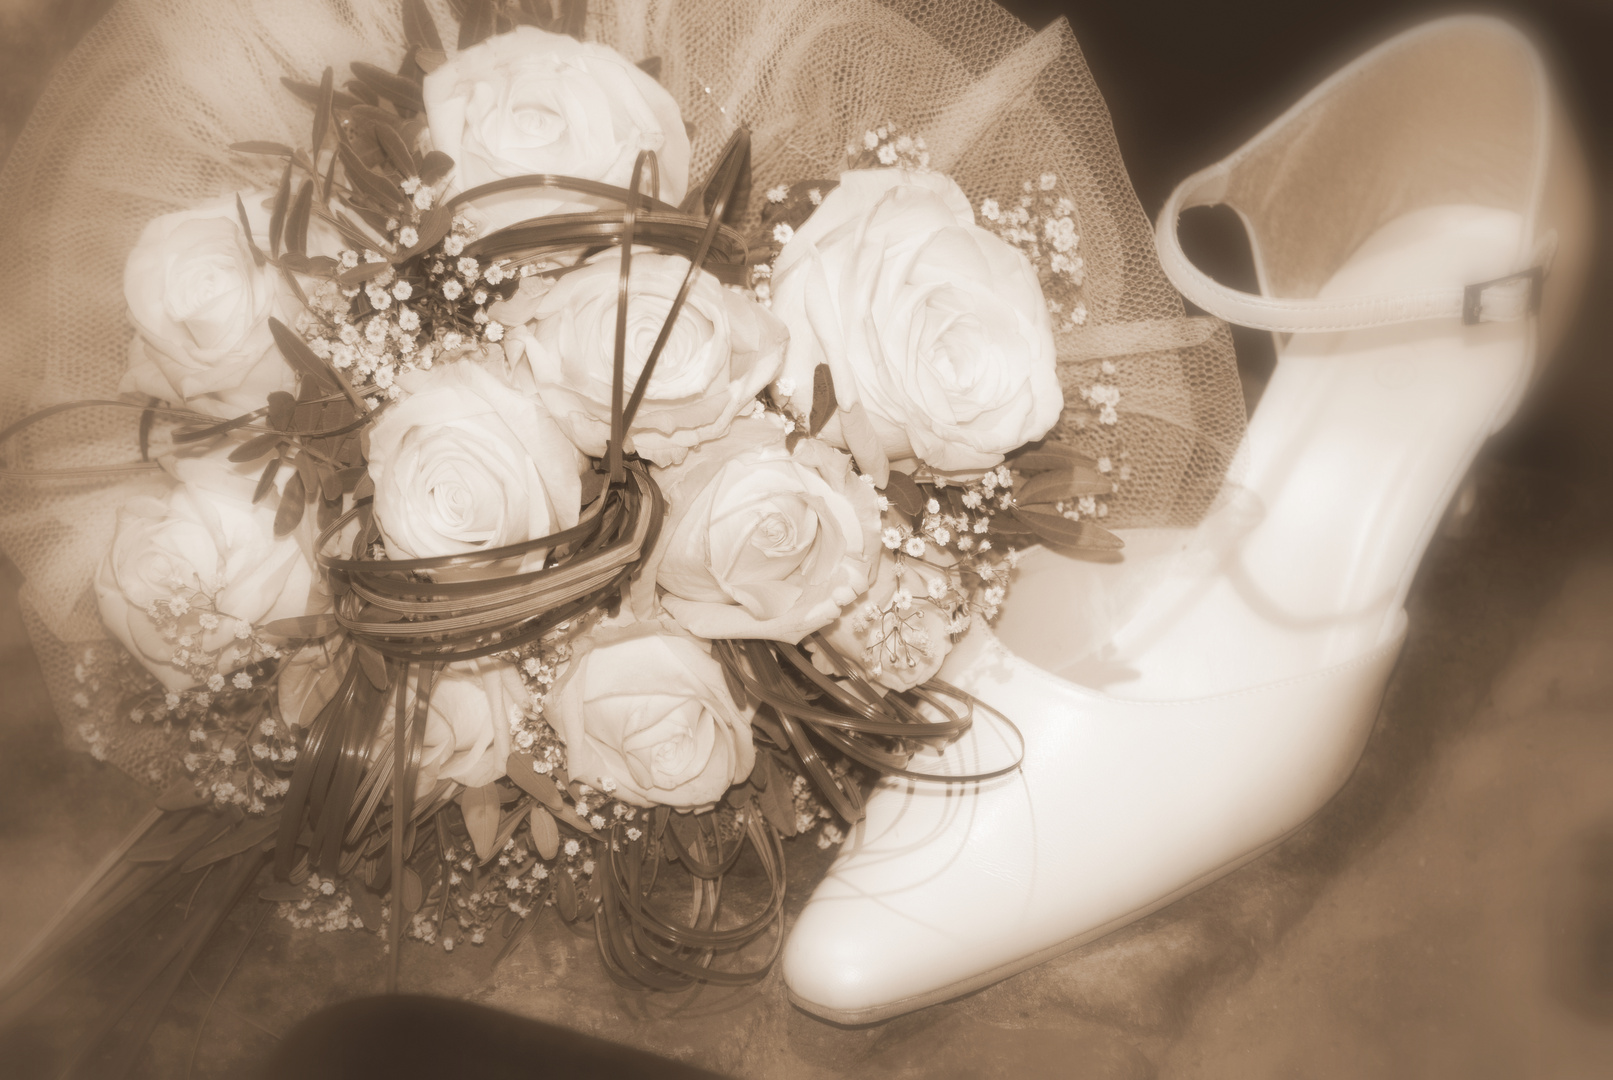 Schuh und Blumen der Braut - Hochzeit vom besten Freund.